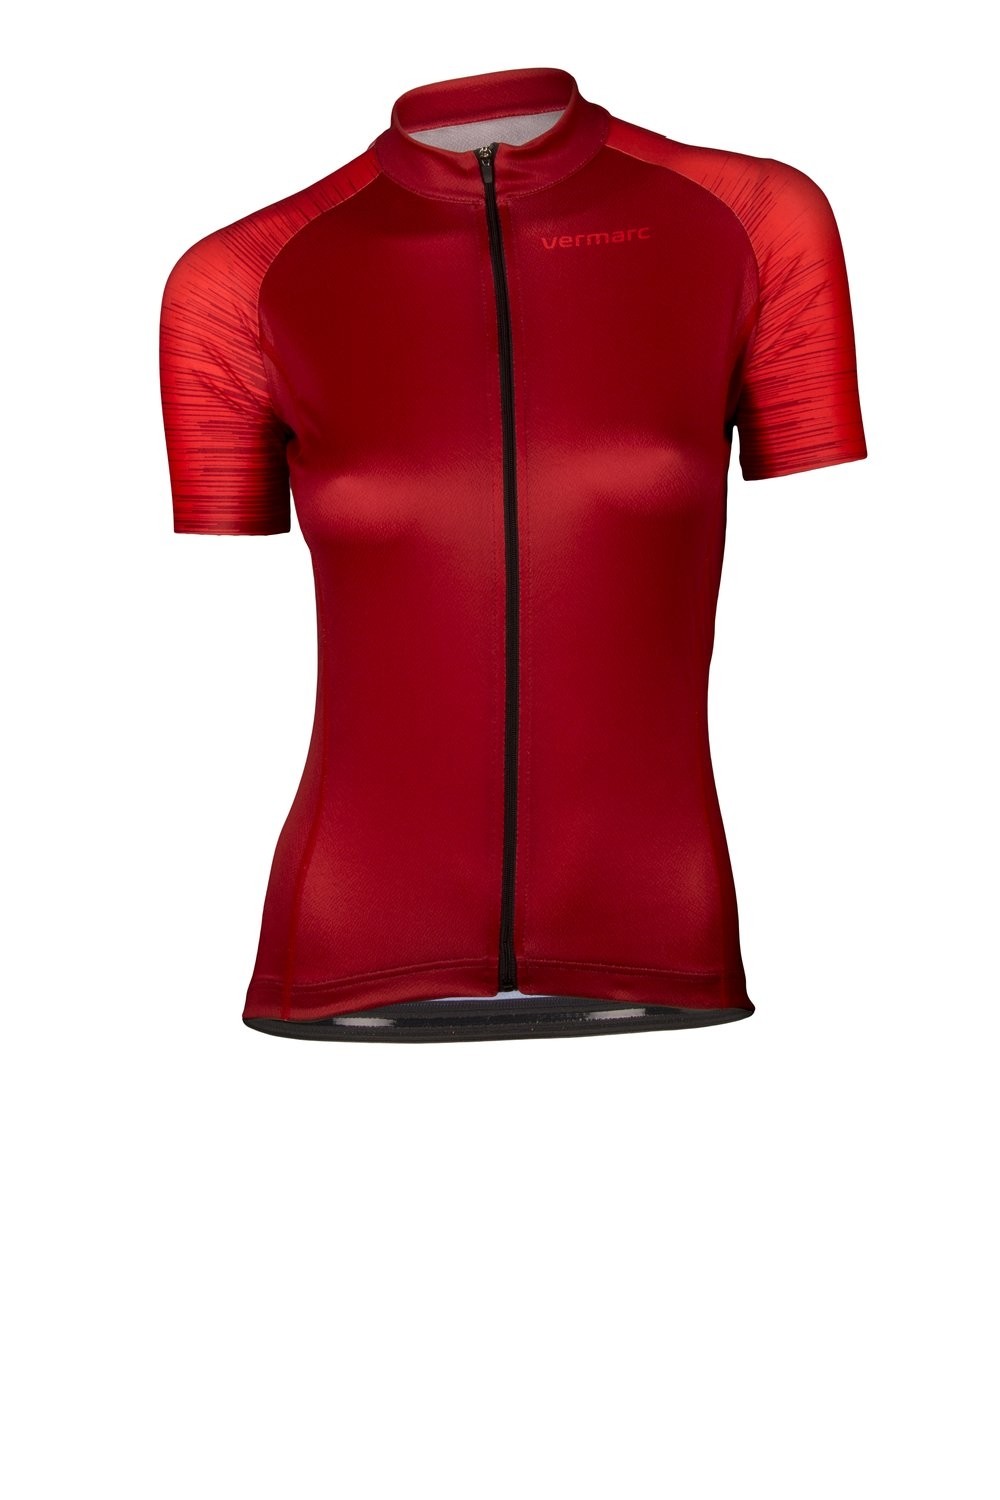 Vermarc seiso sp.l aero maillot de cyclisme manches courtes femme bordeaux rouge